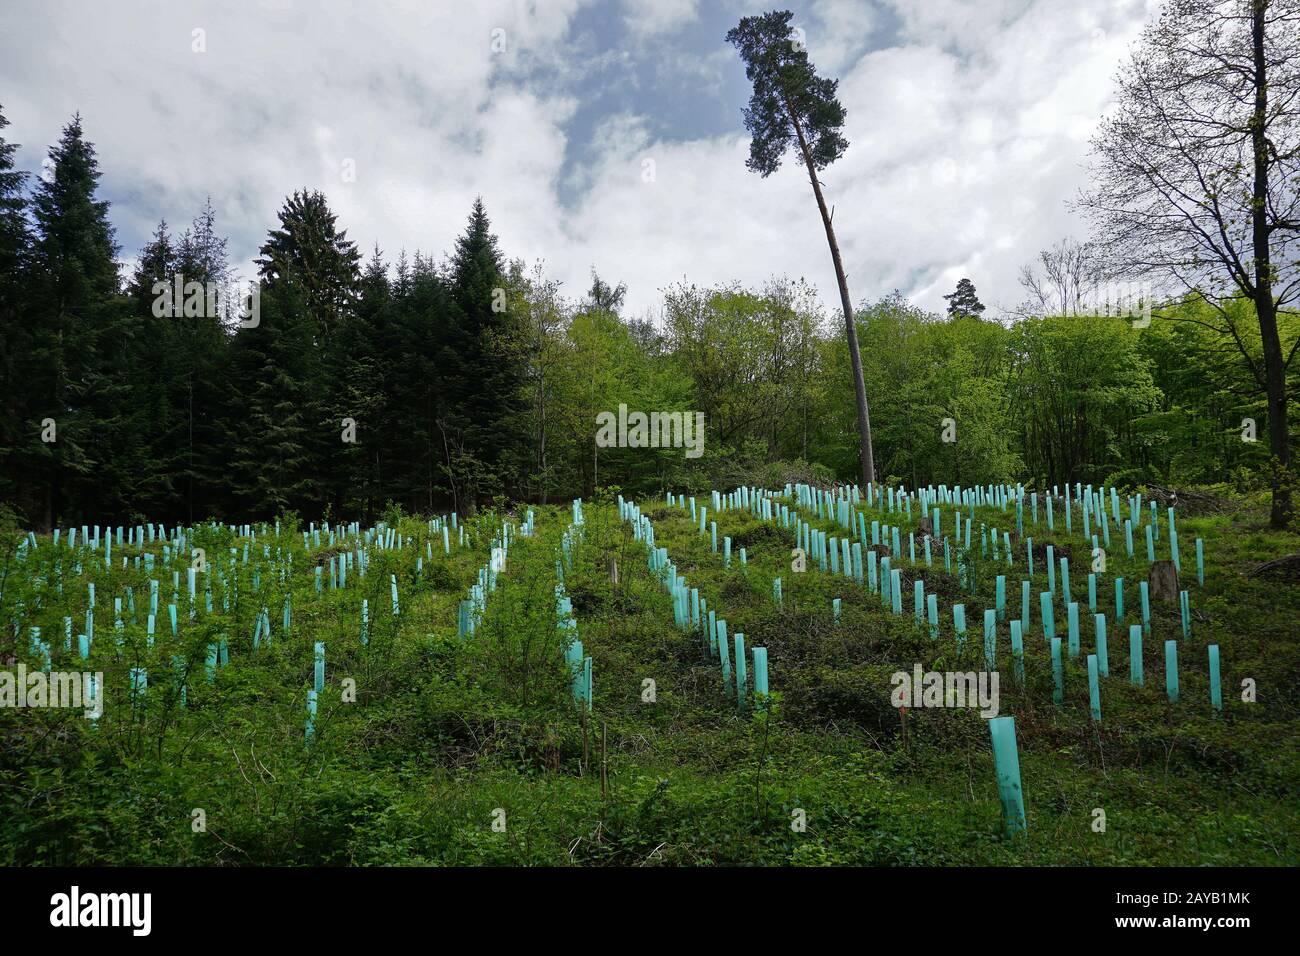 reforestation, reafforestation, afforestation Stock Photo